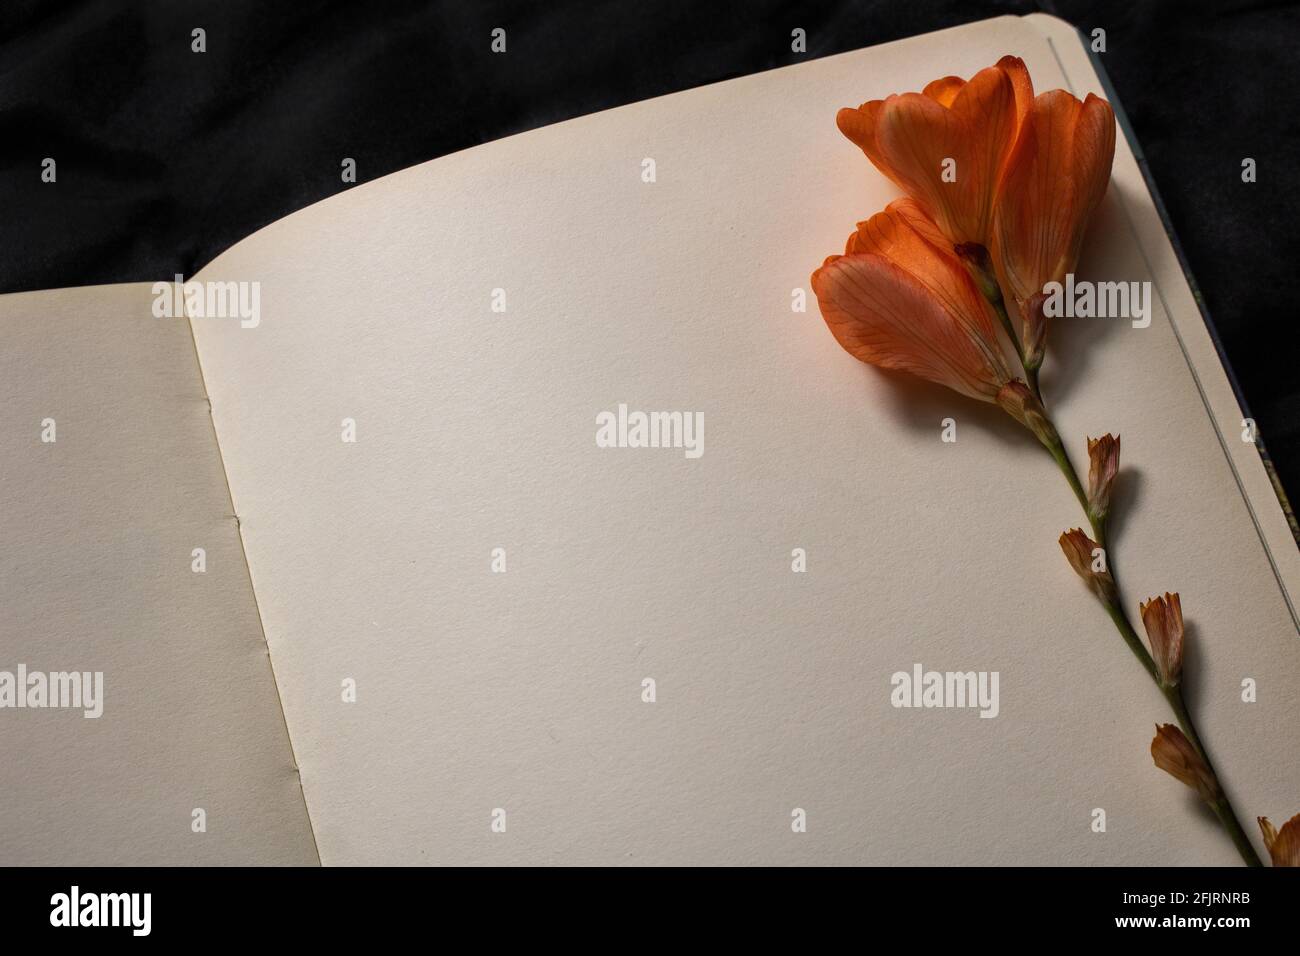 Gros plan de la fleur de freesia orange reposant sur le dessus de la page vide du carnet sur un fond noir. Espace vide pour le texte. Concept de nostalgie, tristesse Banque D'Images